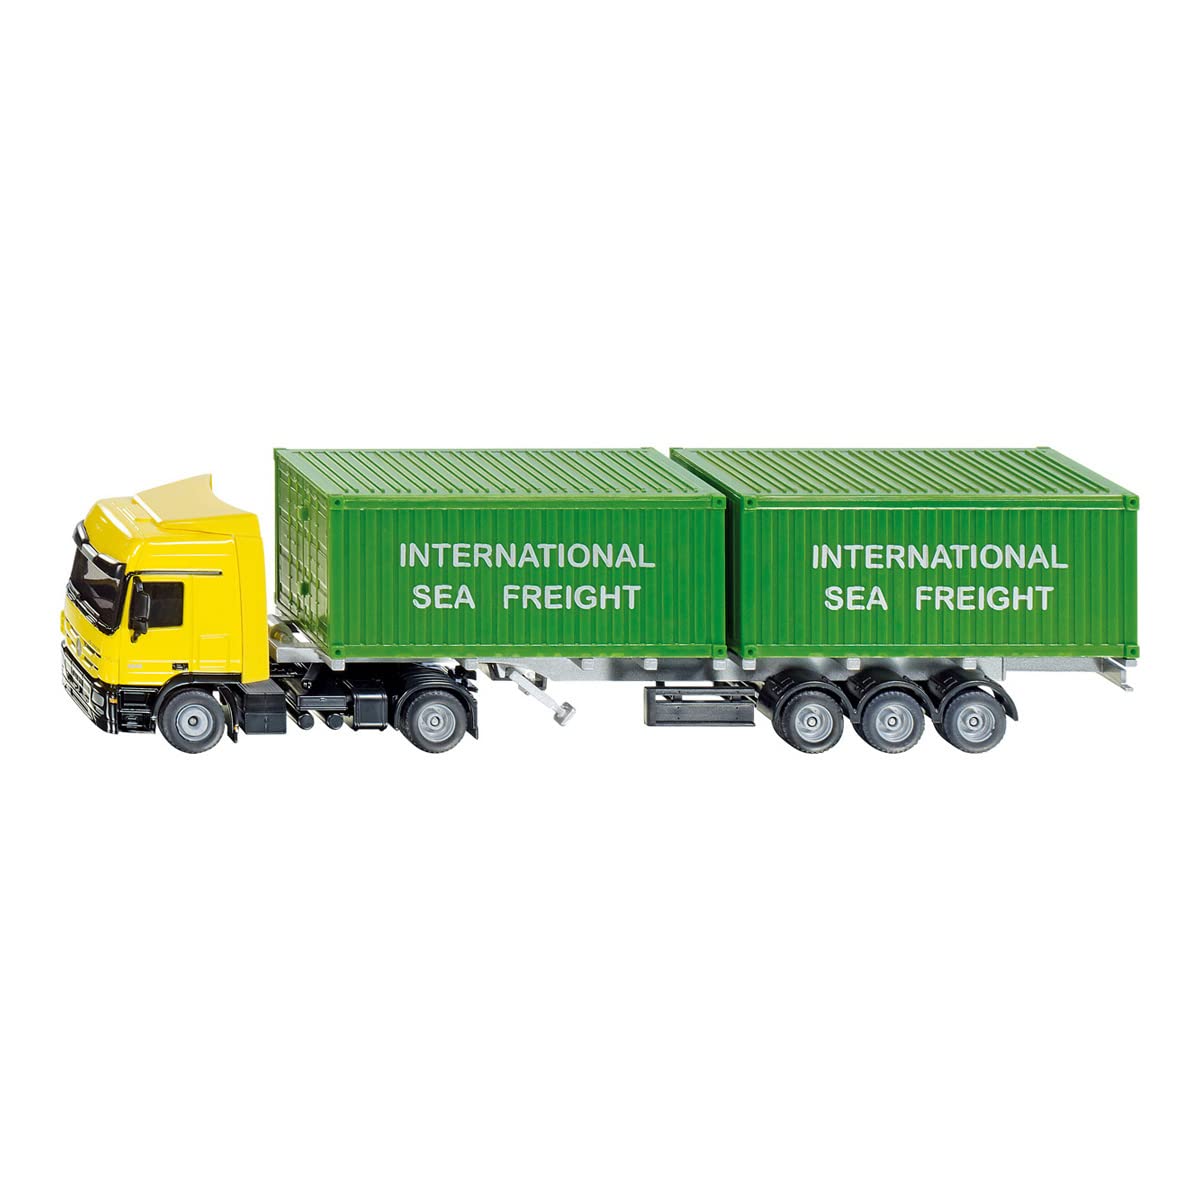 siku 3921, LKW mit Container, 1:50, Metall/Kunststoff, Gelb/Grün, Inkl. 2 Container, Variierbare Anhängerlänge